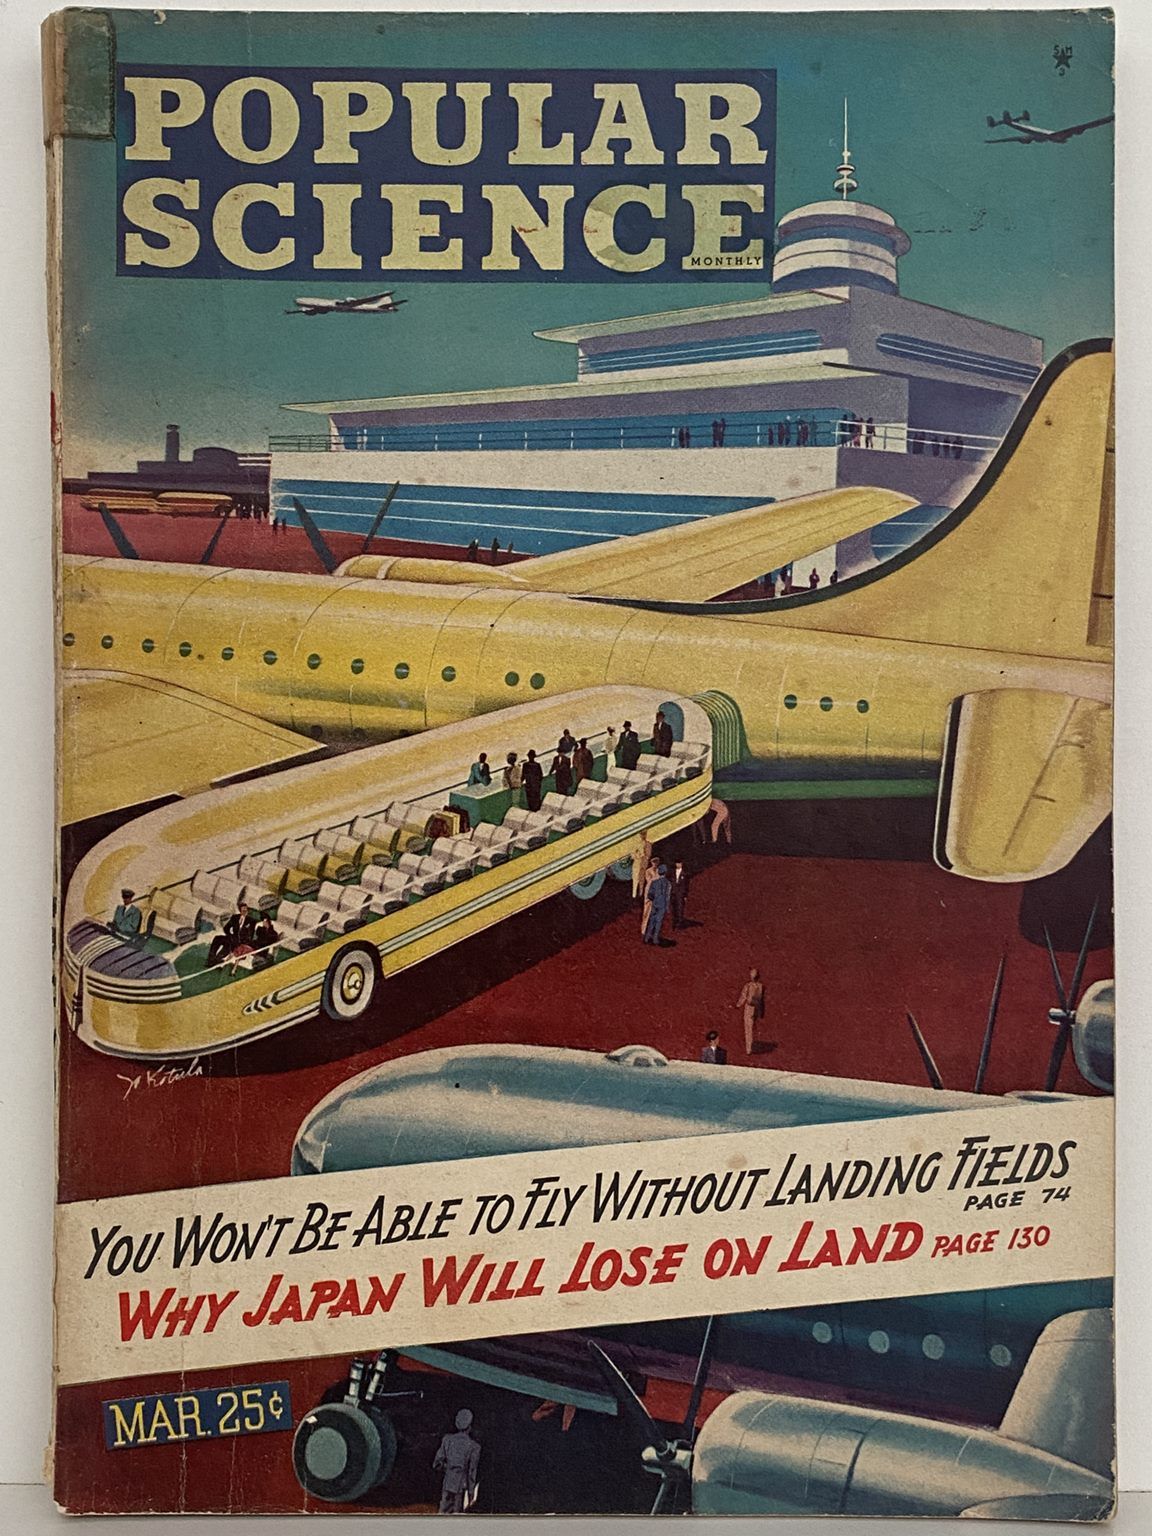 VINTAGE MAGAZINE: Popular Science, Vol 146, No. 3 - March 1945